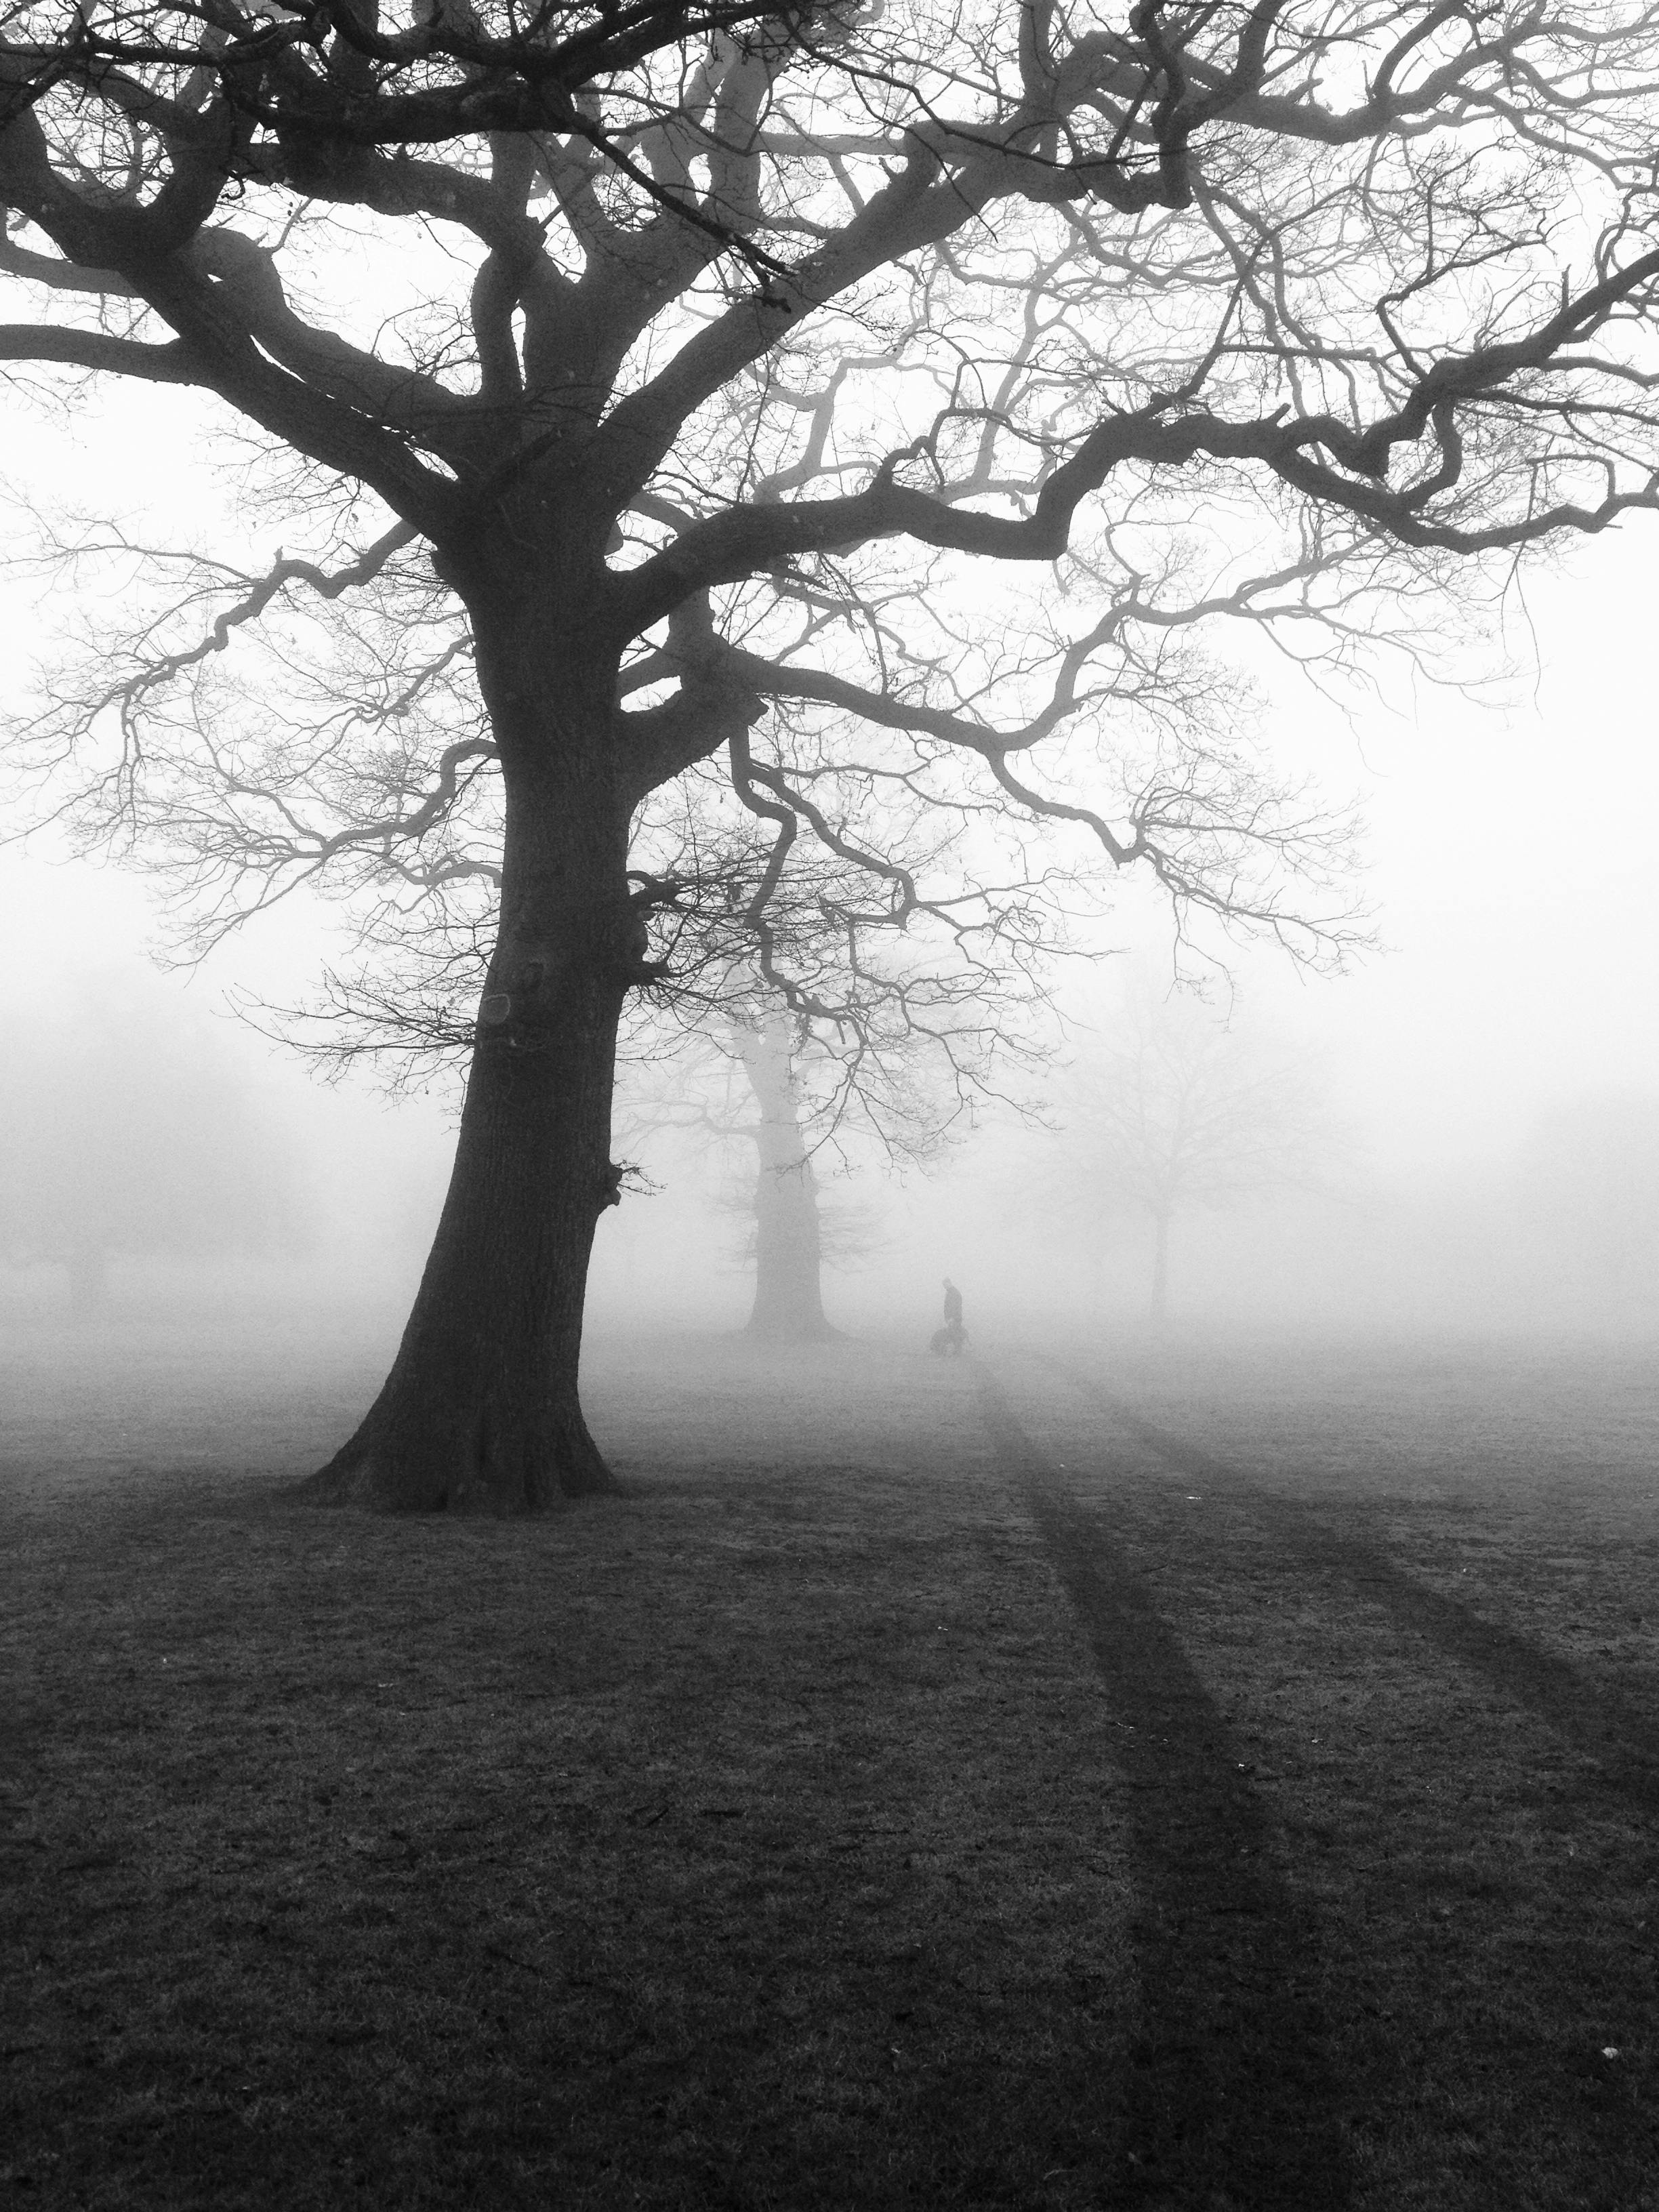 trees-mist-fog-eerie-51000.jpeg (2448×3264)